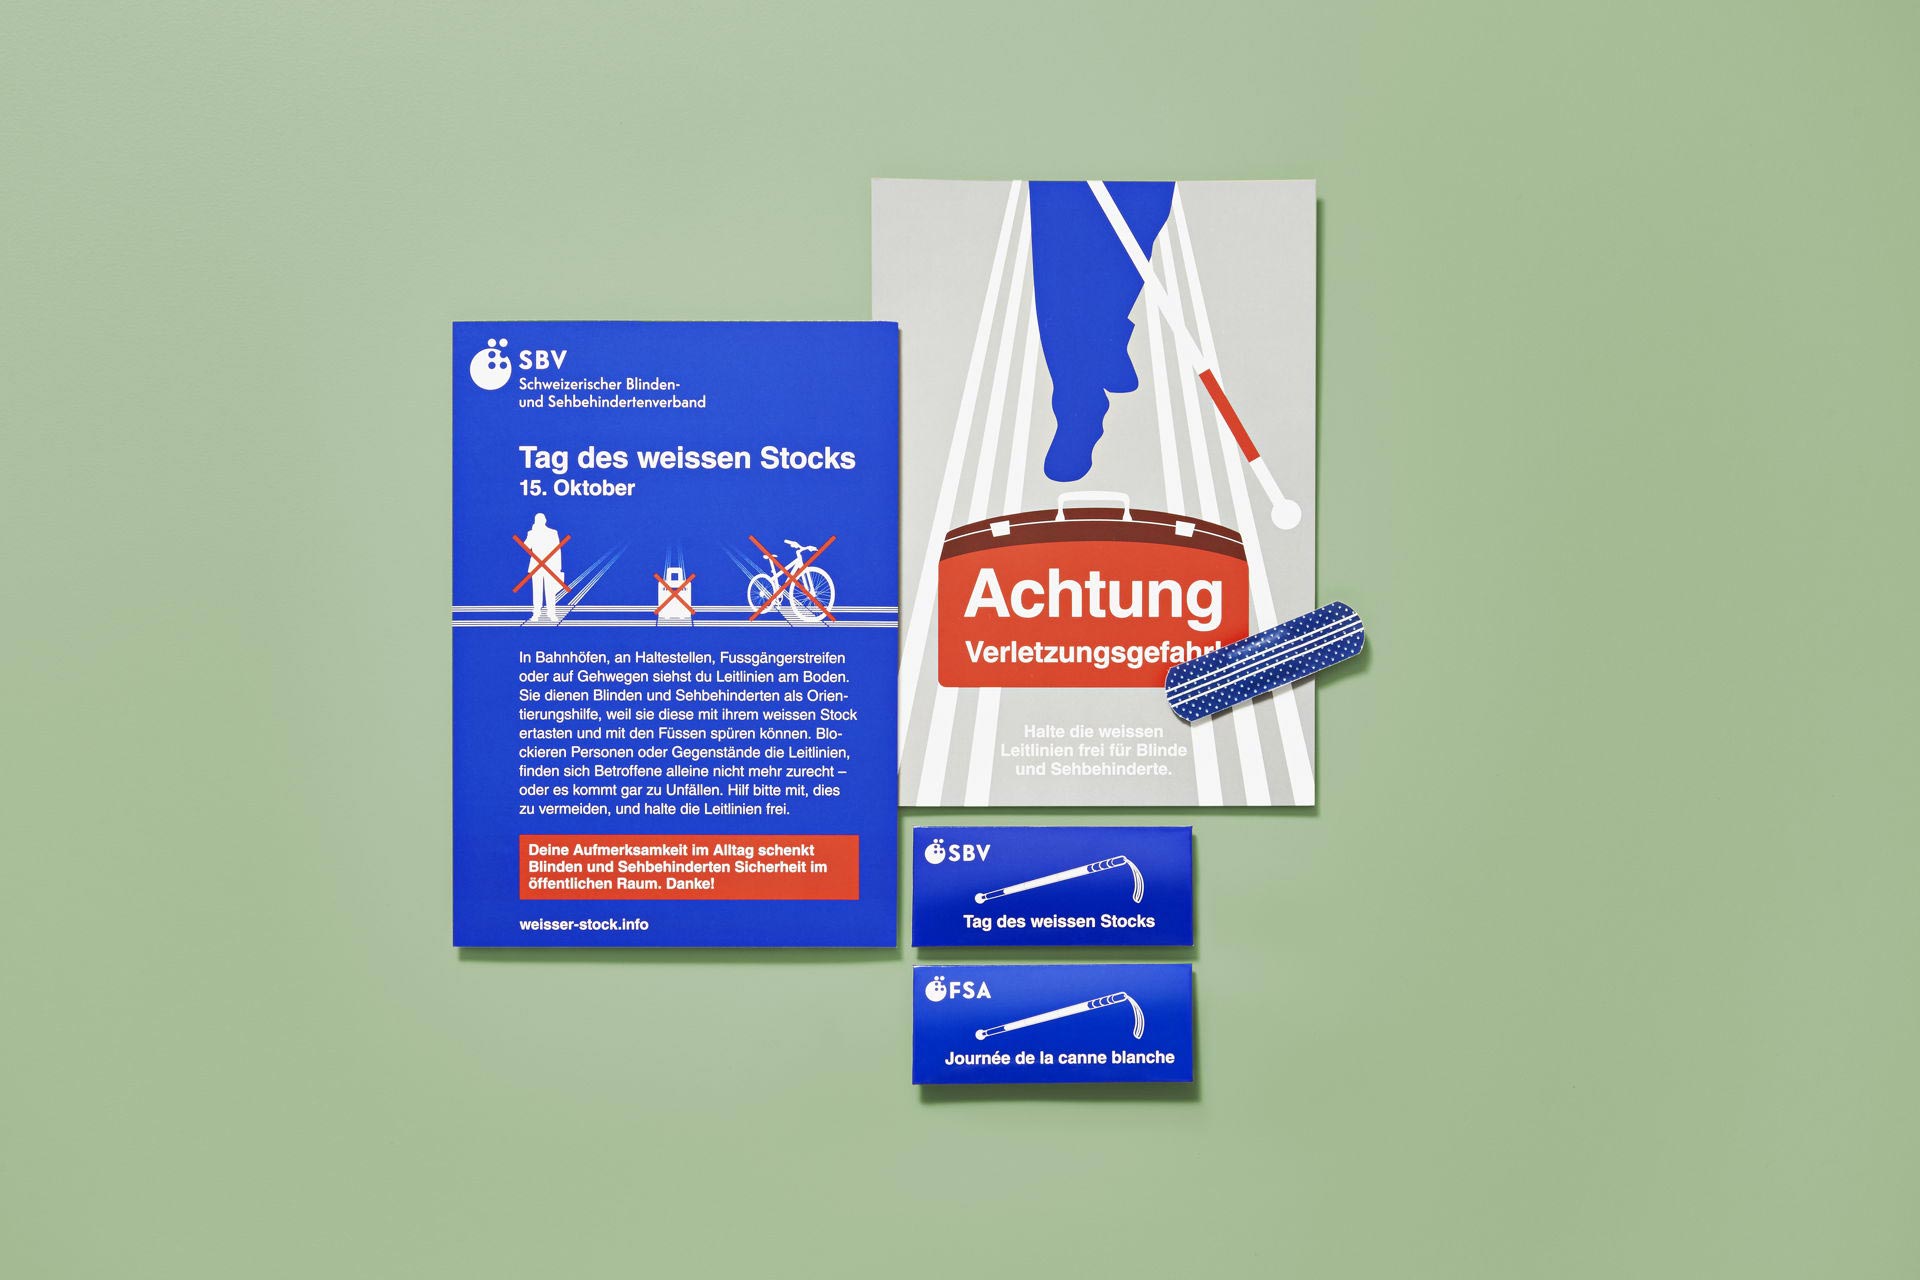 Mailing mit Pflaster-Set zum Tag des weissen Stocks für den Schweizerischen Blinden- und Sehbehindertenverband SBV